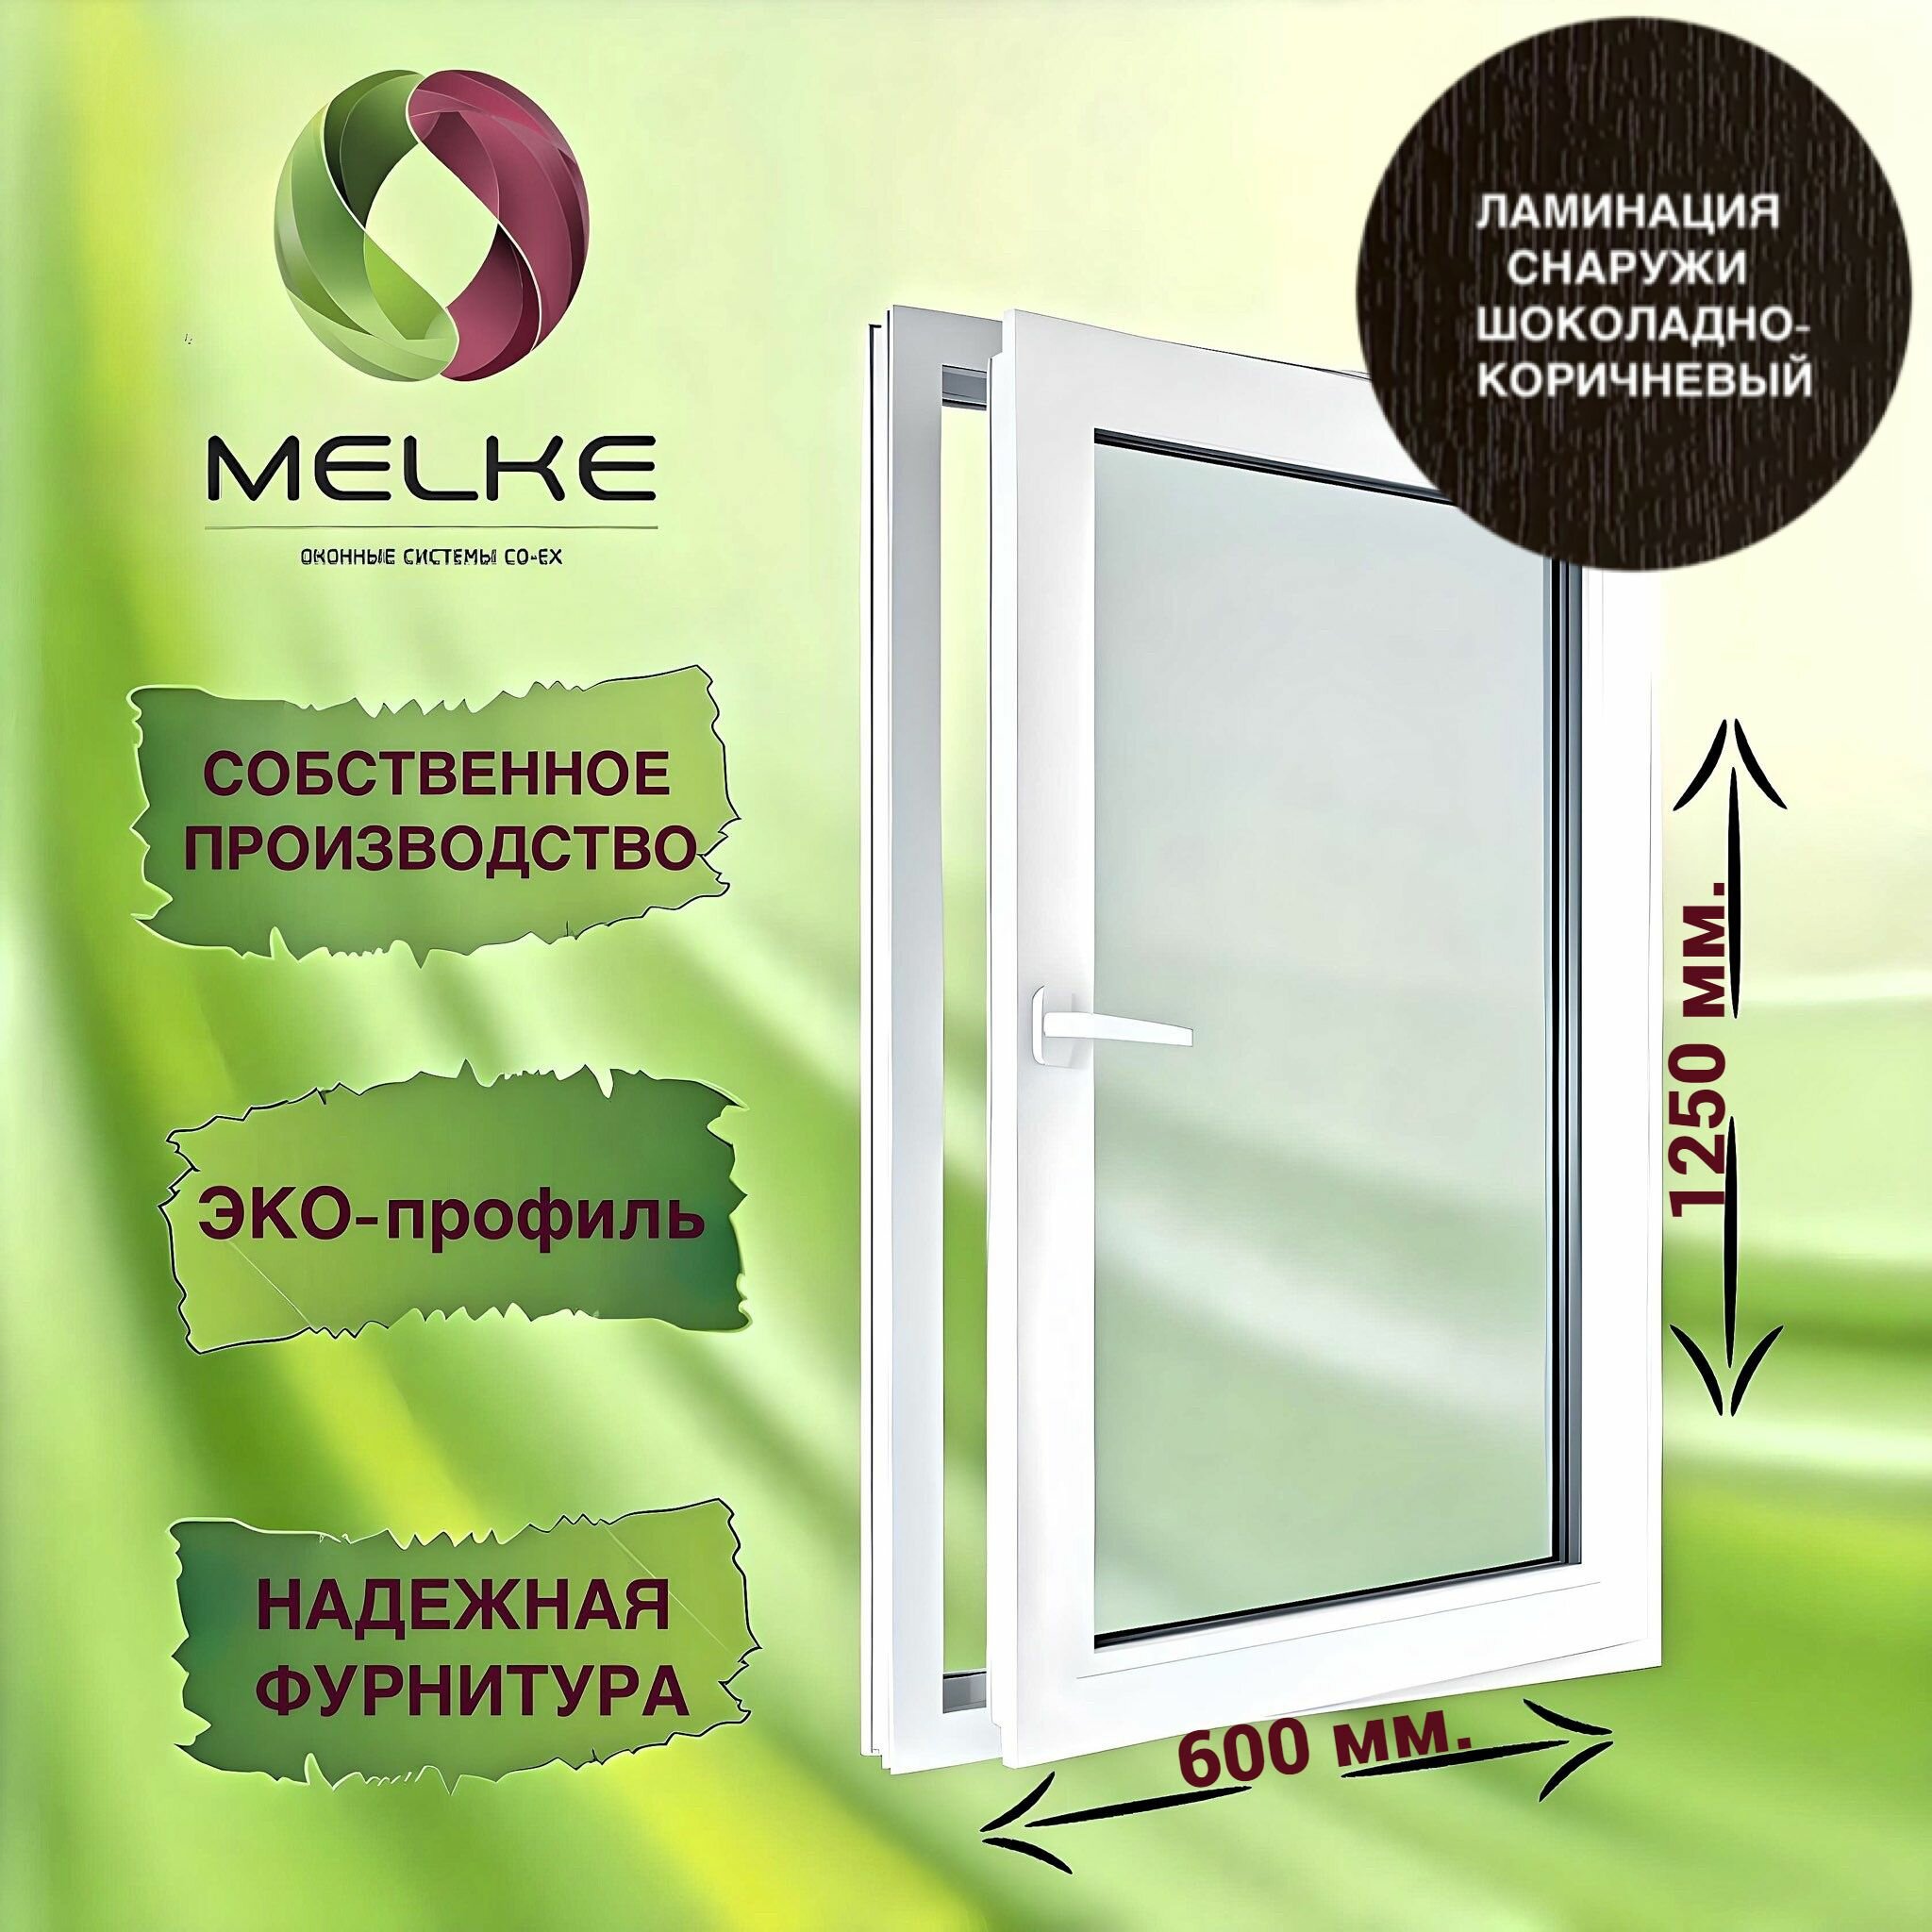 Окно 1250 х 600 мм, Melke 60 (Фурнитура FUTURUSS), правое одностворчатое, поворотно-откидное, цвет внешней ламинации Шоколадно-коричневый, 2-х камерный стеклопакет, 3 стекла